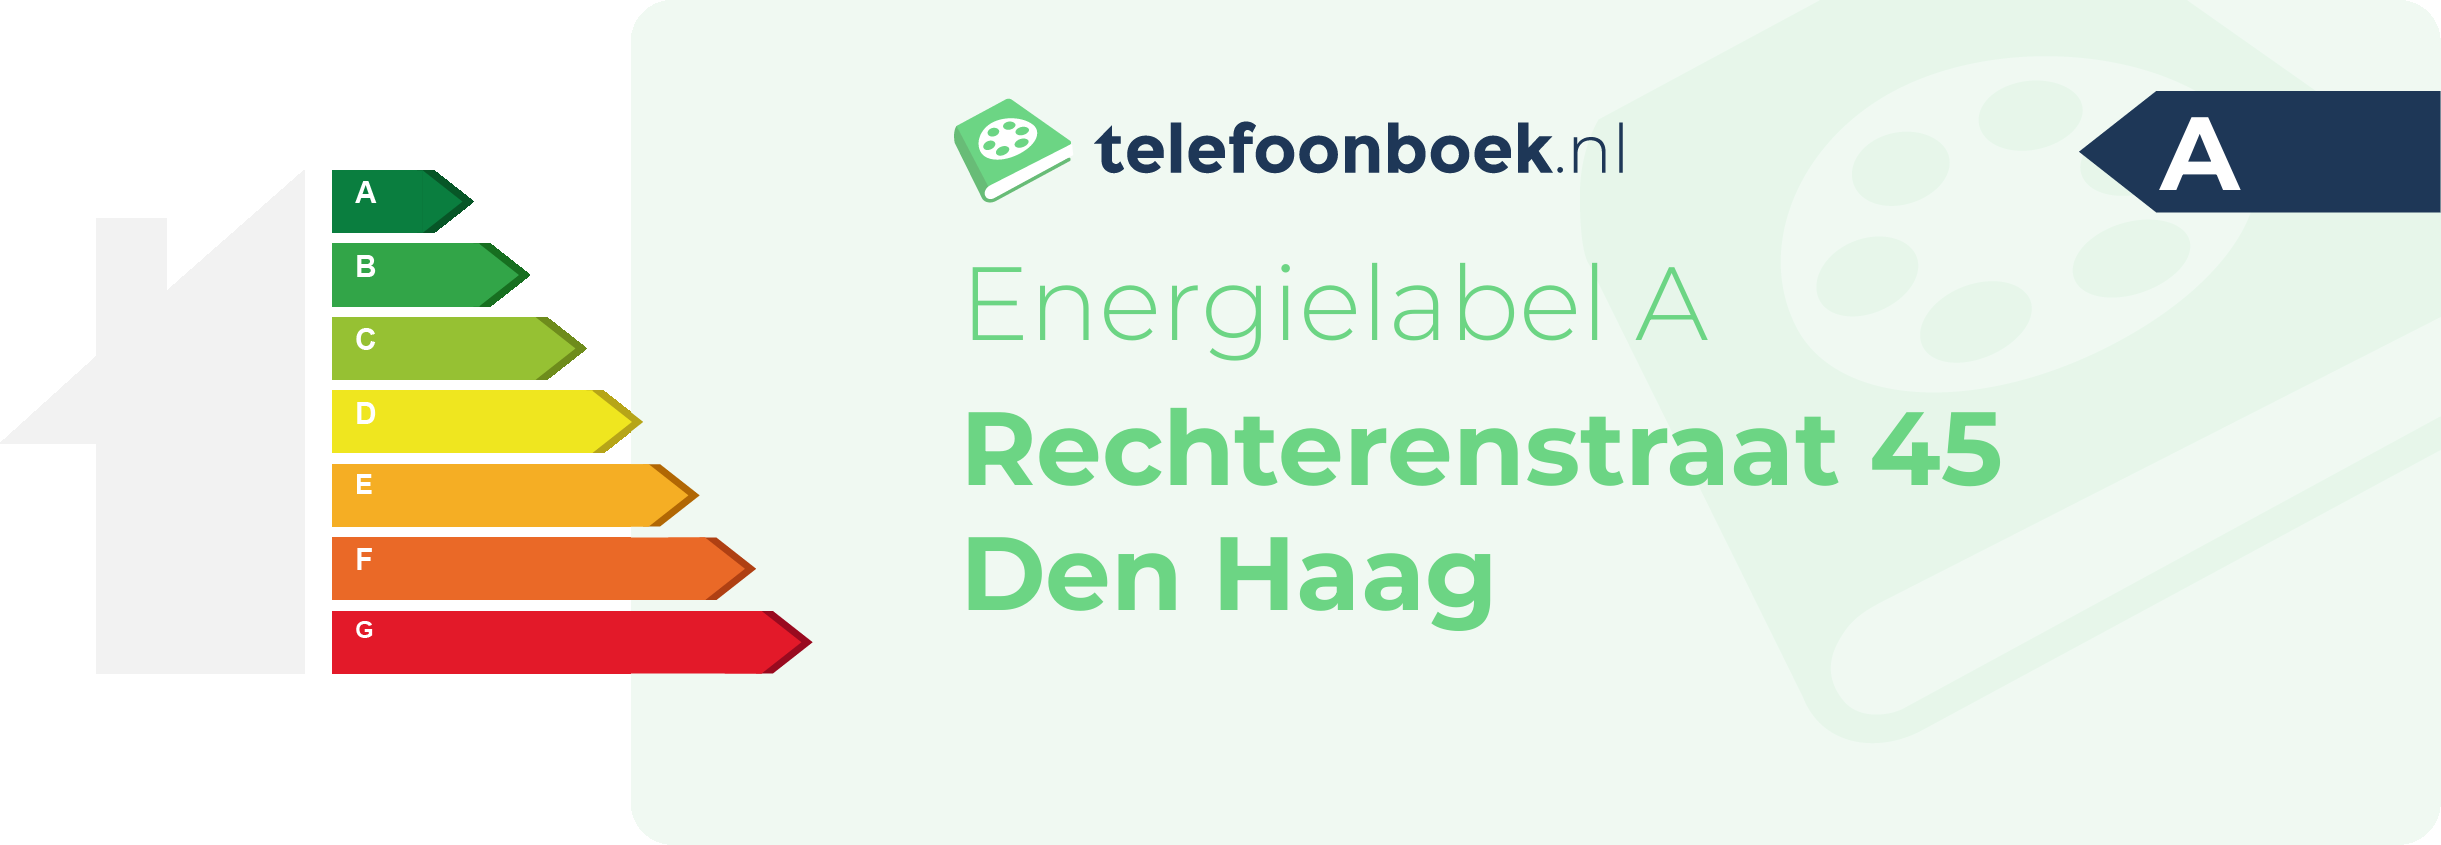 Energielabel Rechterenstraat 45 Den Haag